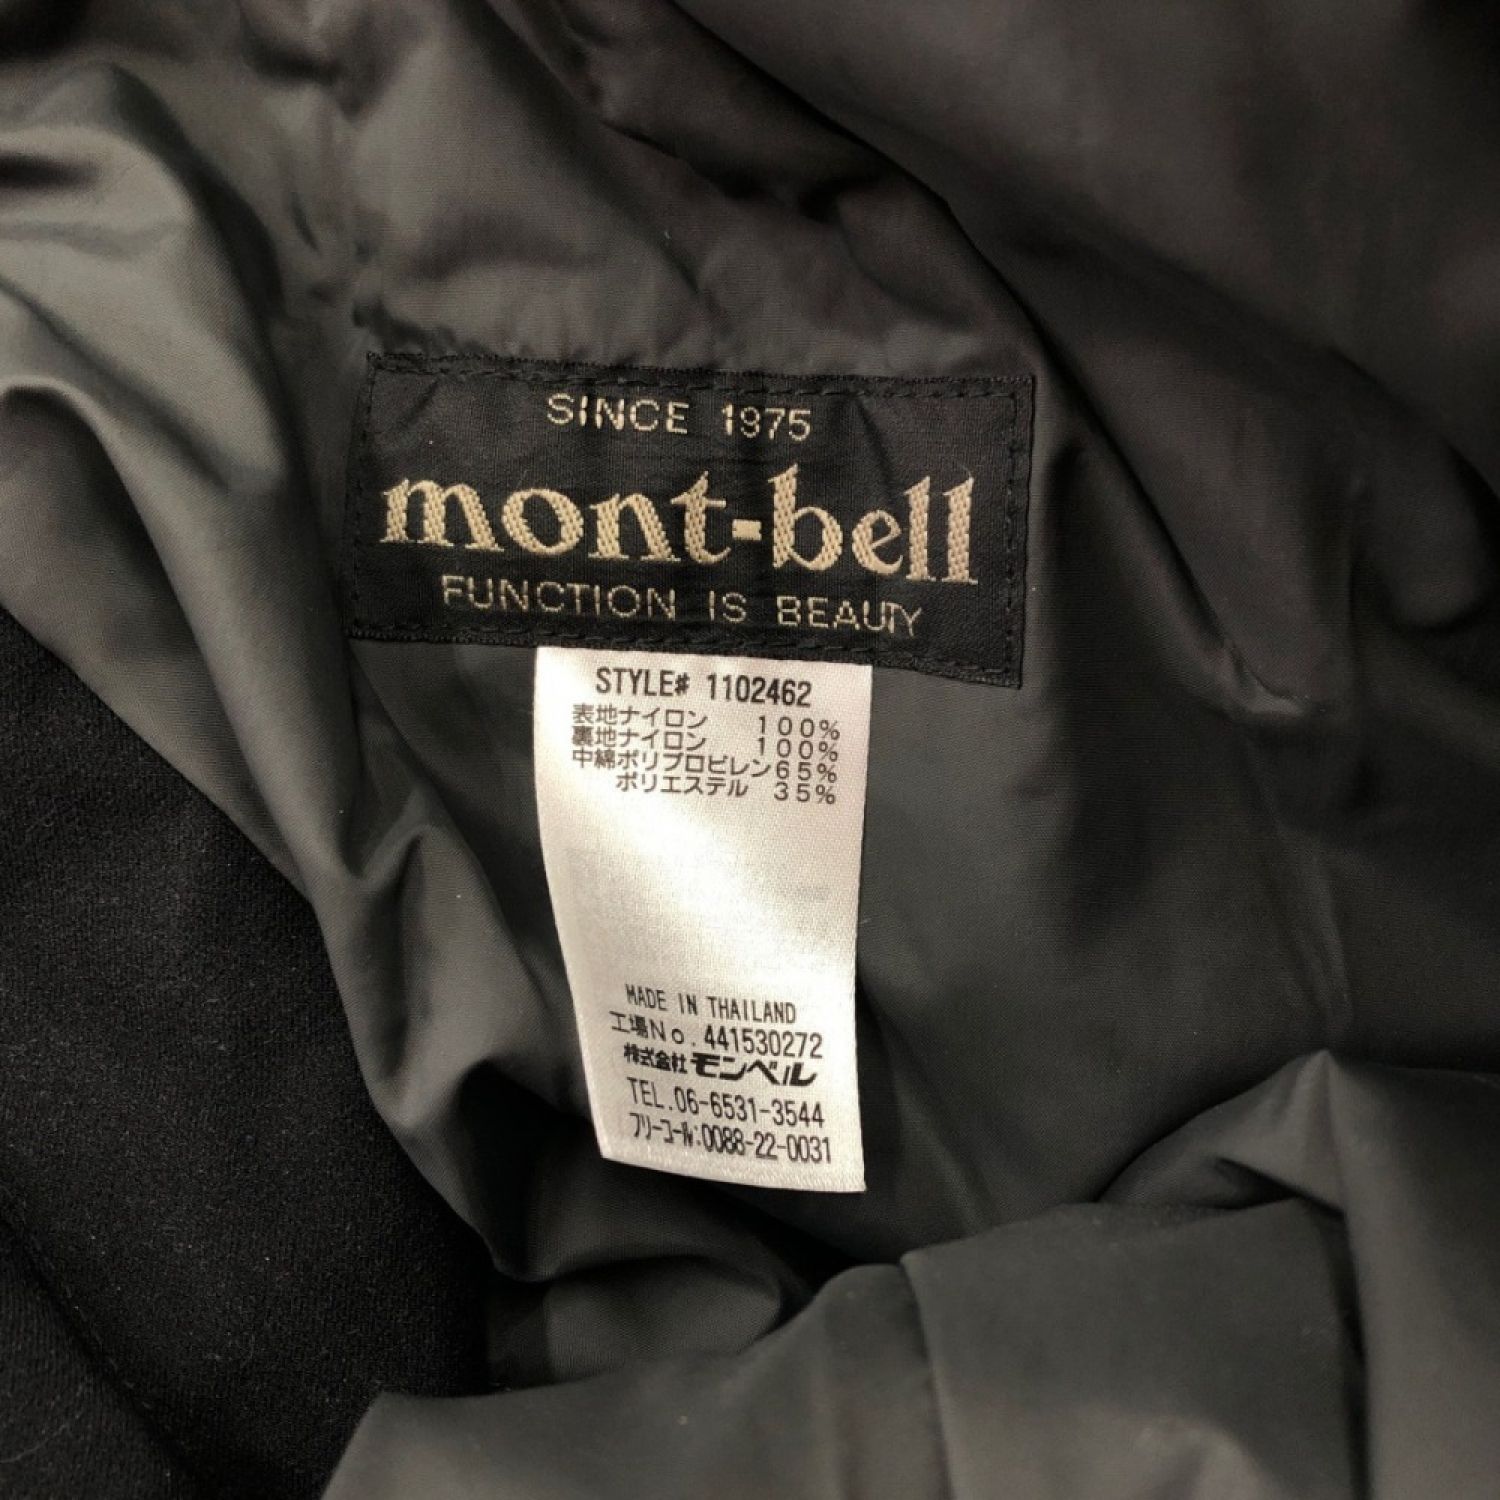 中古 Mont Bell モンベル レディース ドライテックインシュレーテッドパンツ サイズｌ ブラック Sランク 総合リサイクルショップ なんでもリサイクルビッグバン オンラインショップ